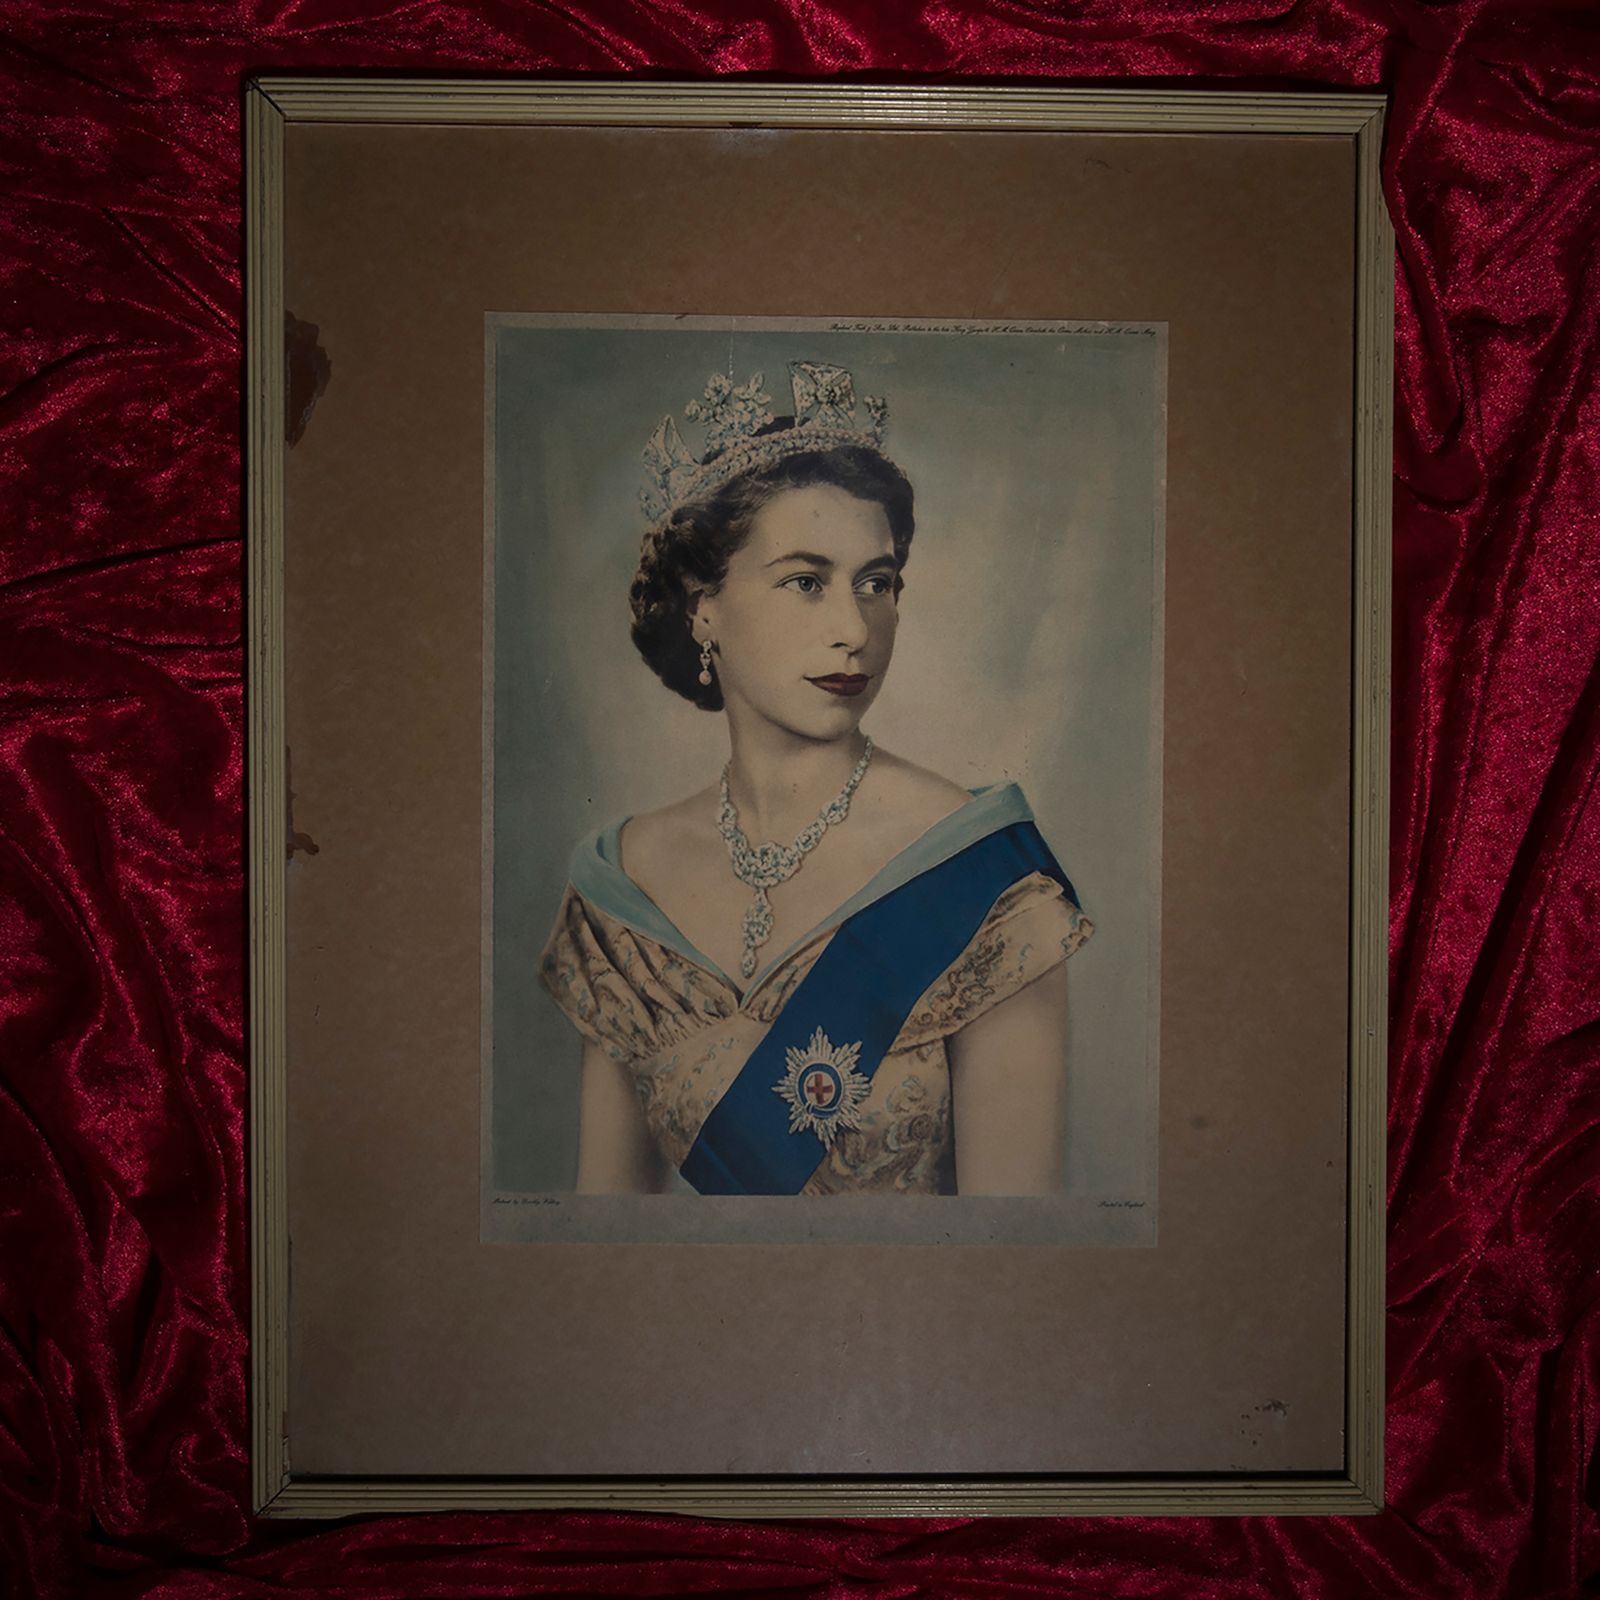 © Erin Lee - The Queen's coronation portrait.